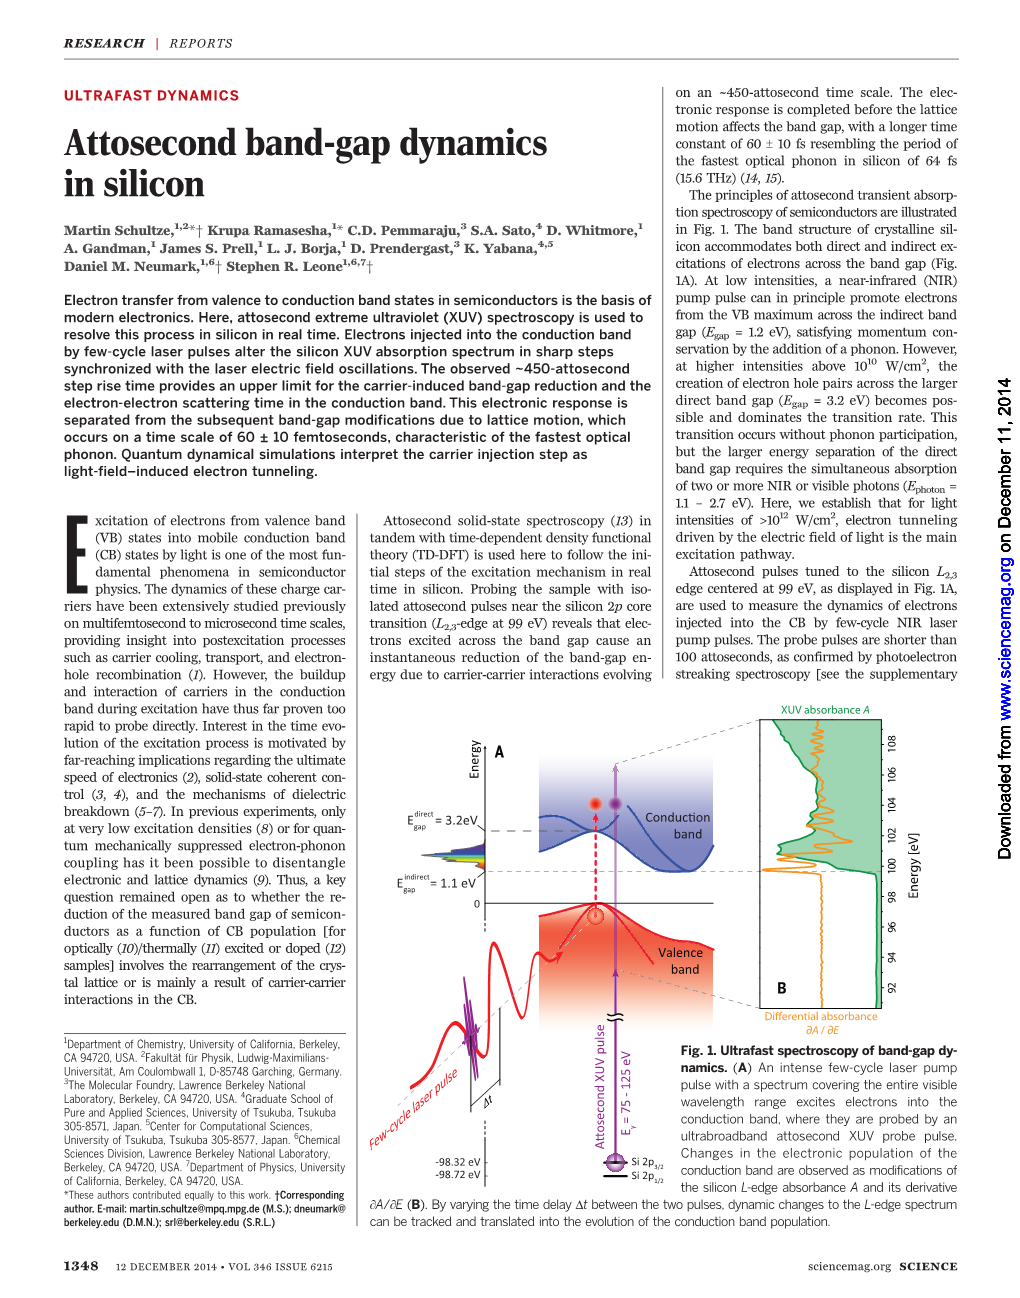 Attosecond Band-Gap Dynamics in Silicon Martin Schultze Et Al